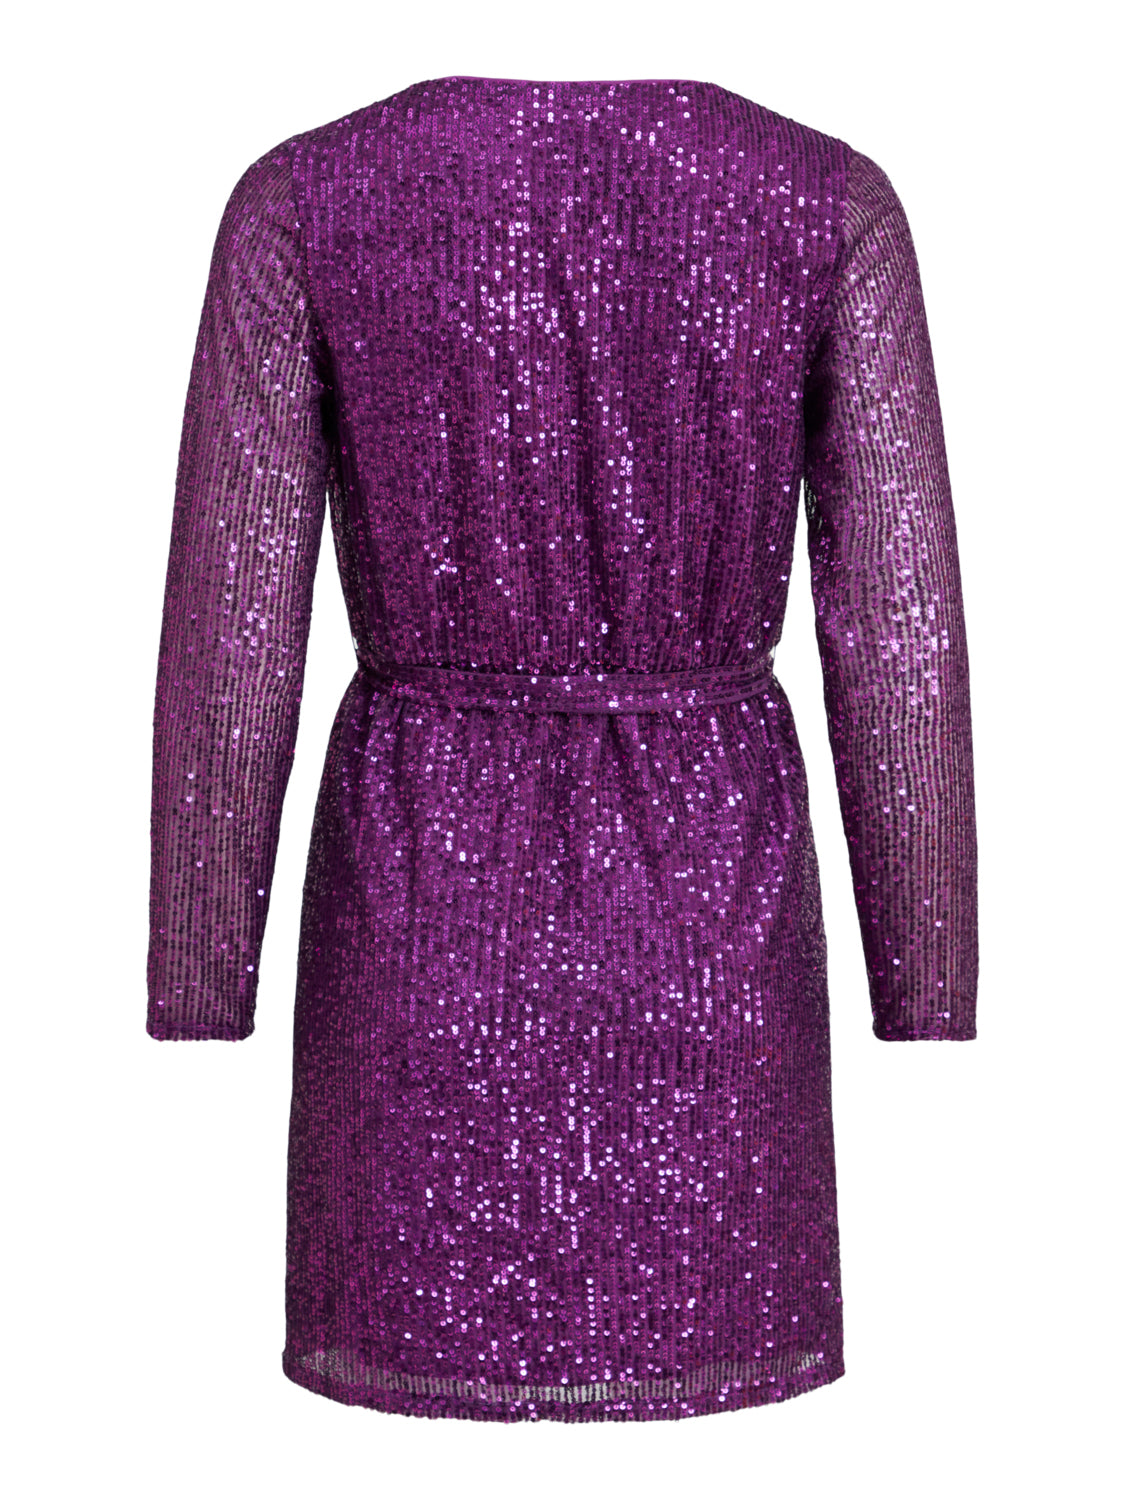 VIGLITAS Dress - Sparkling Grape